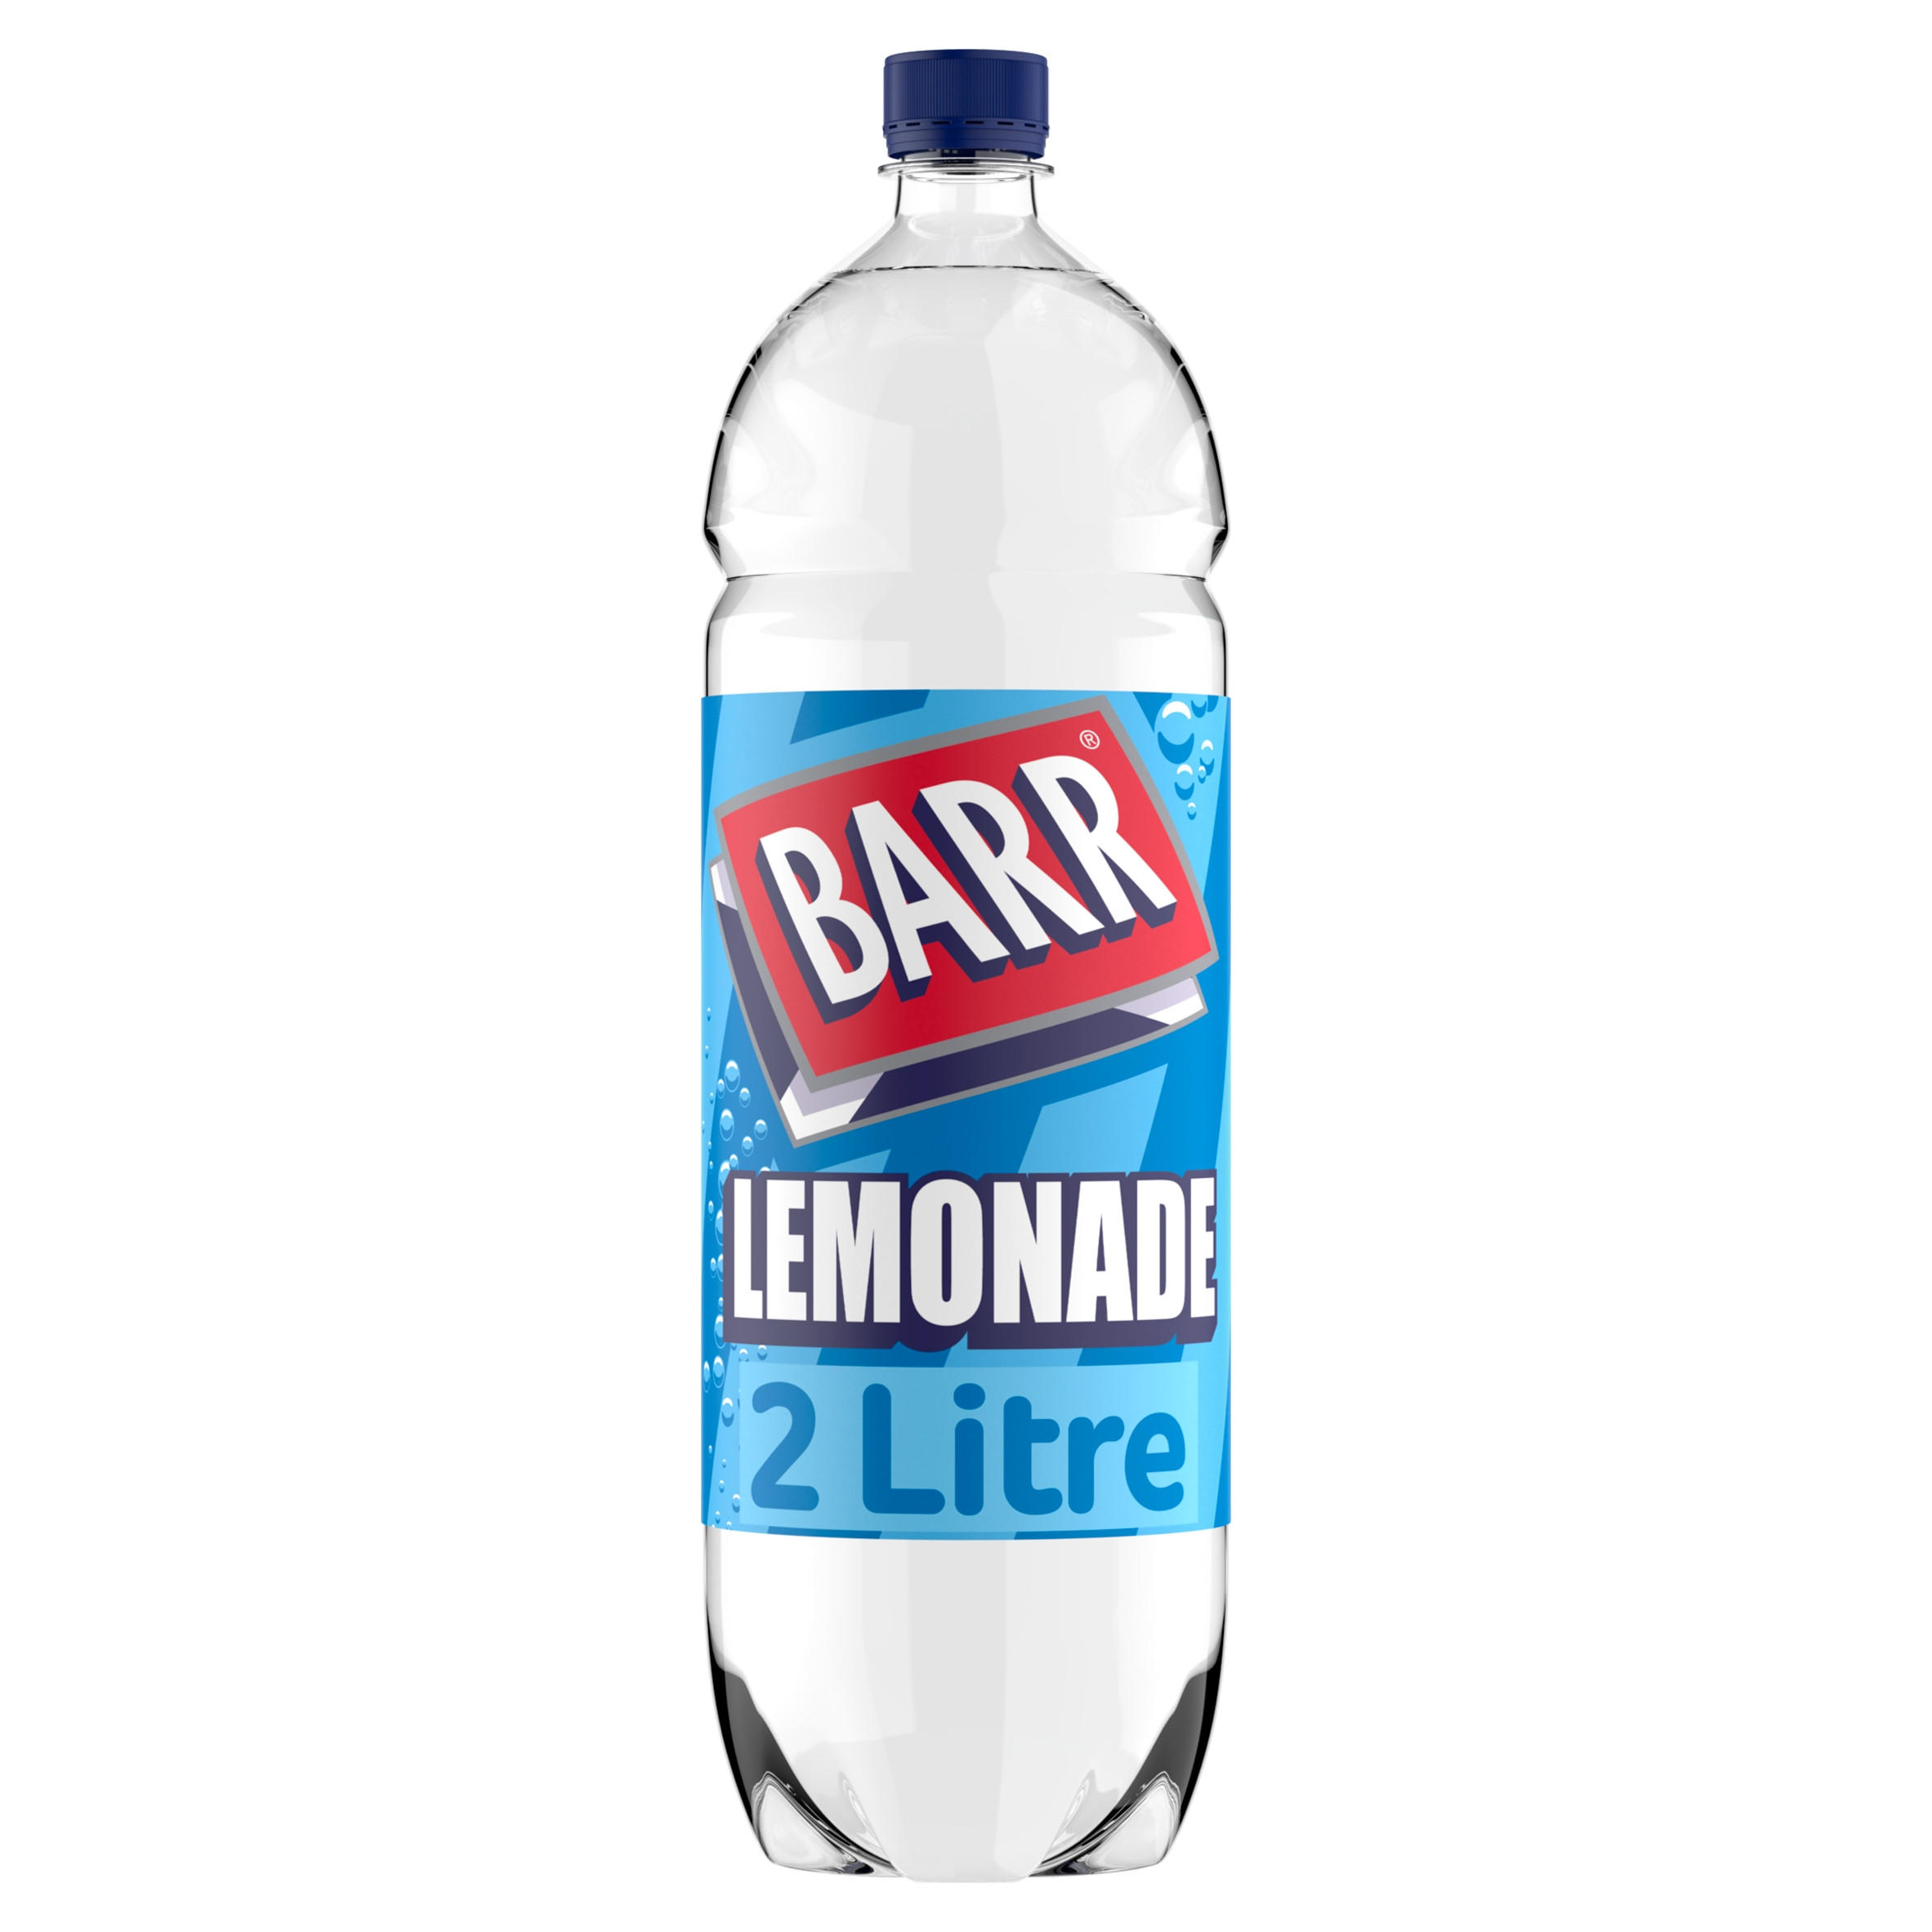 Barr Lemonade 2 Litre